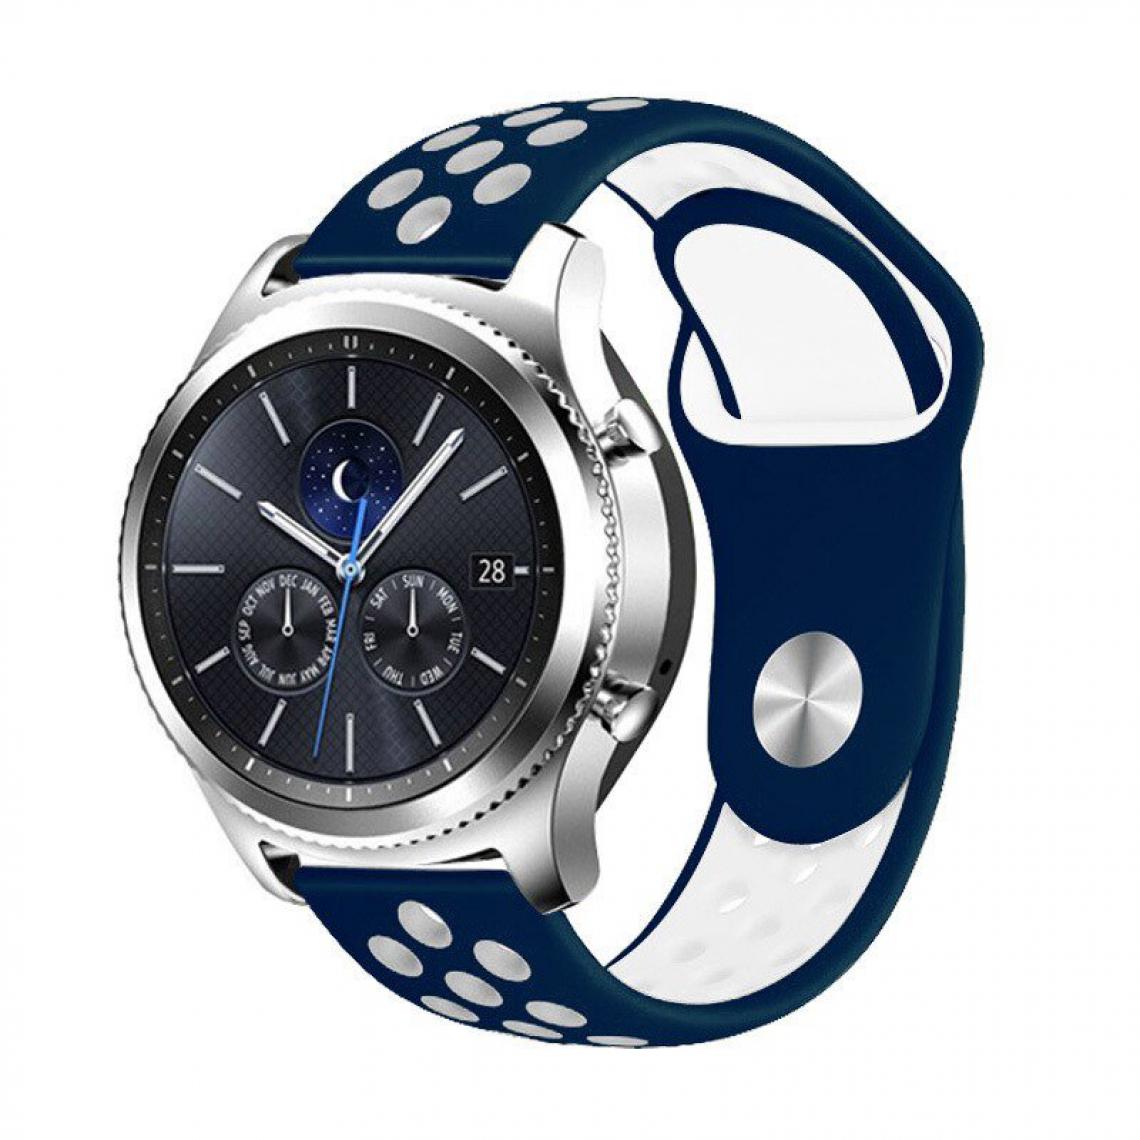 Phonecare - Bracelet SportyStyle pour Huawei GT2 Pro Classic 46mm - Bleu foncé / Blanc - Autres accessoires smartphone